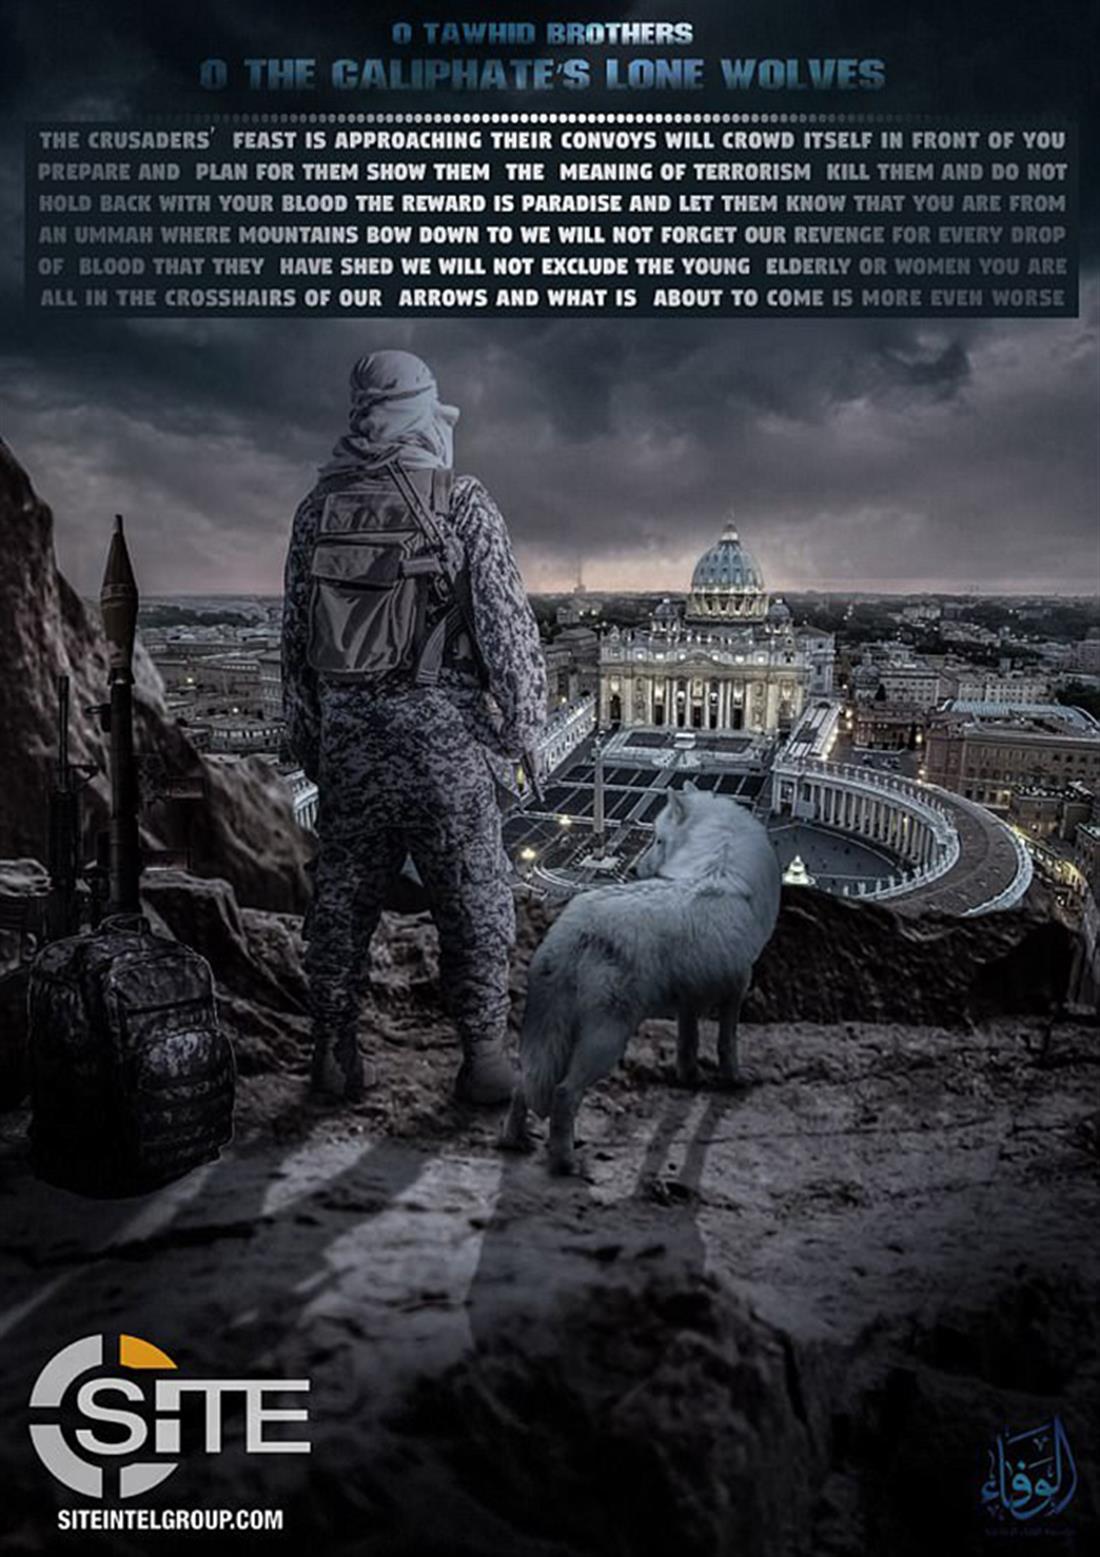 Τζιχαντιστές - ISIS - αφίσες - τρομοκρατία - Ευρώπη